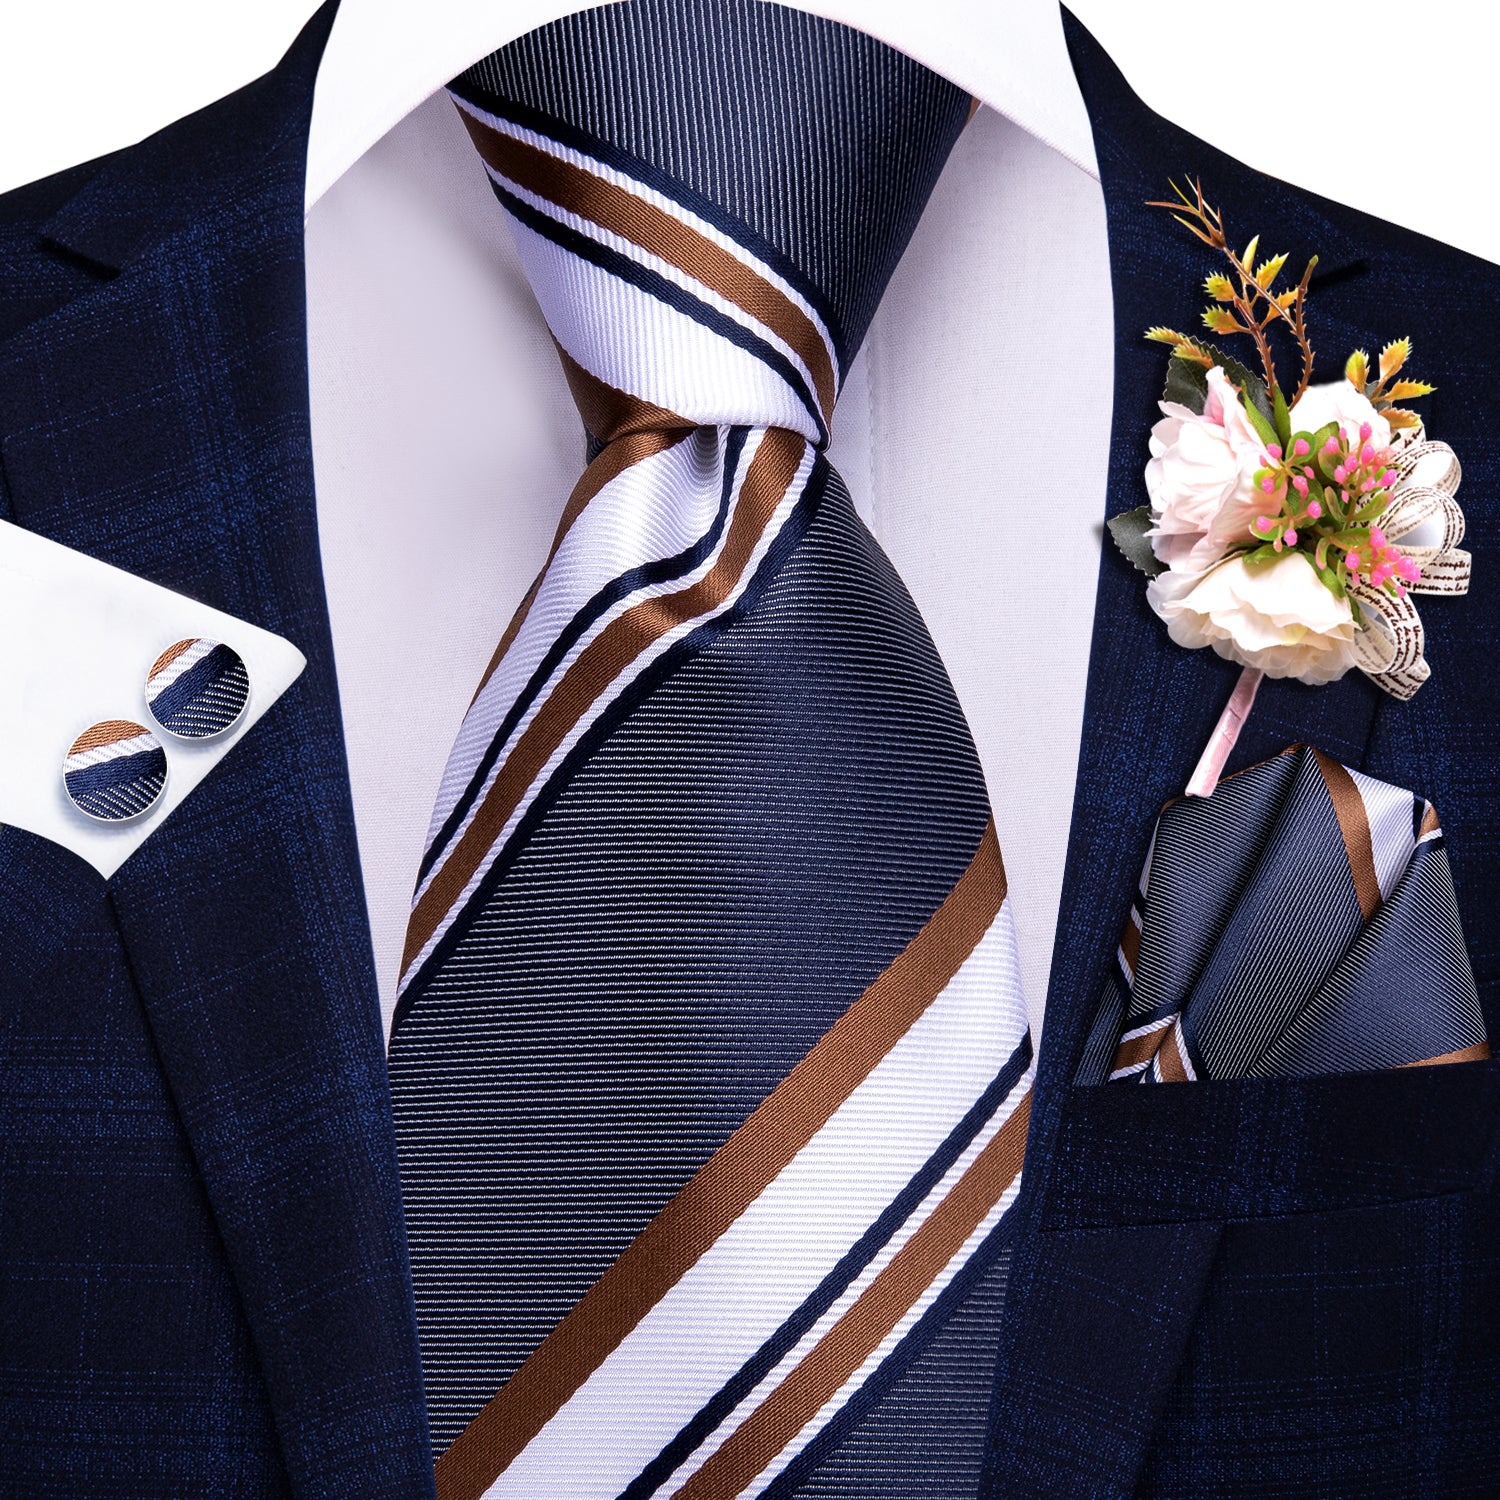 Blue Brown White Striped Tie Handkerchief Cufflinks Set with Wedding Brooch